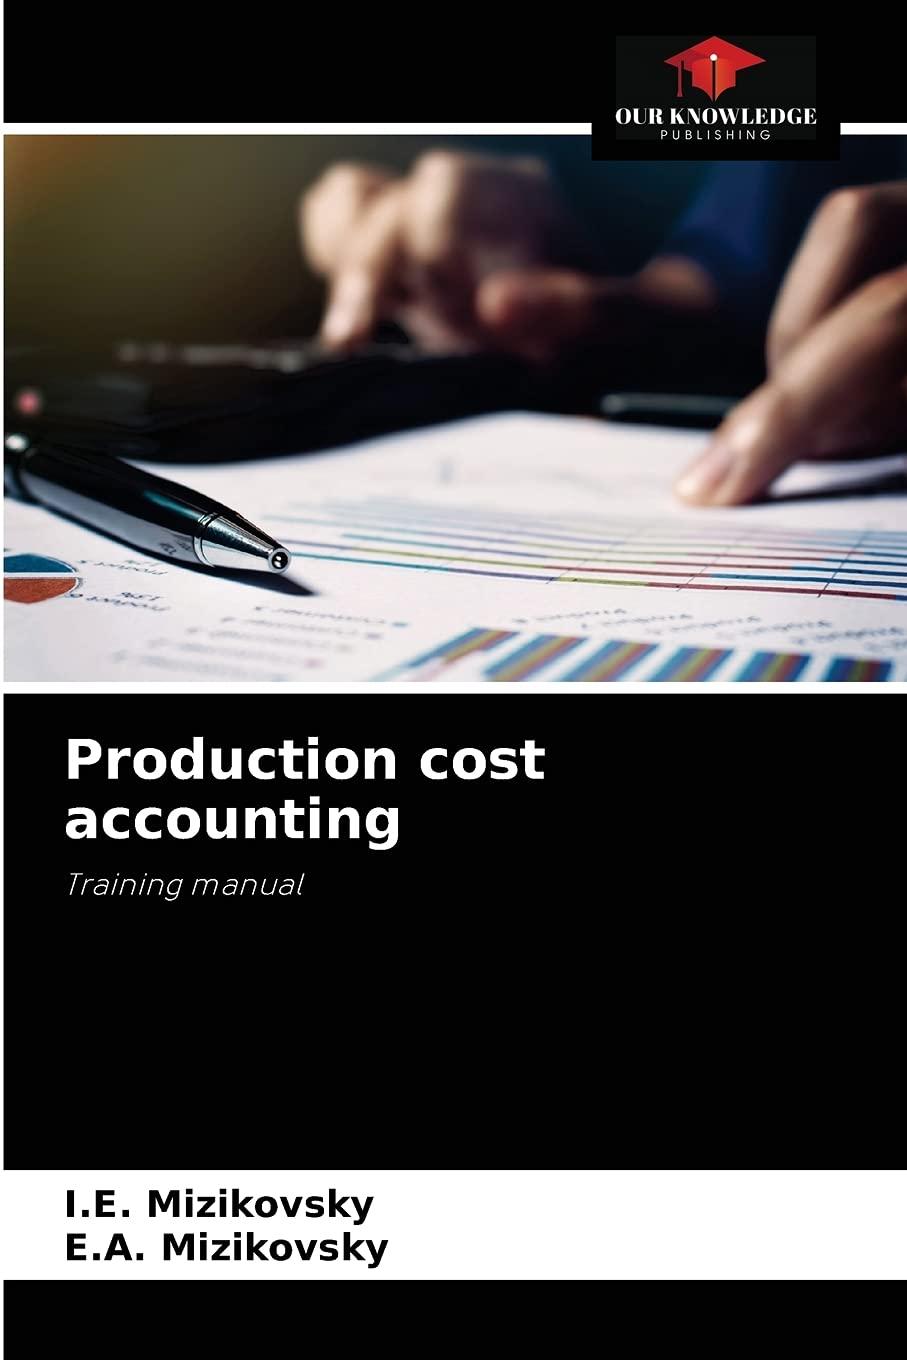 production cost accounting 1st edition i.e. mizikovsky, e.a. mizikovsky 6204077074, 978-6204077079